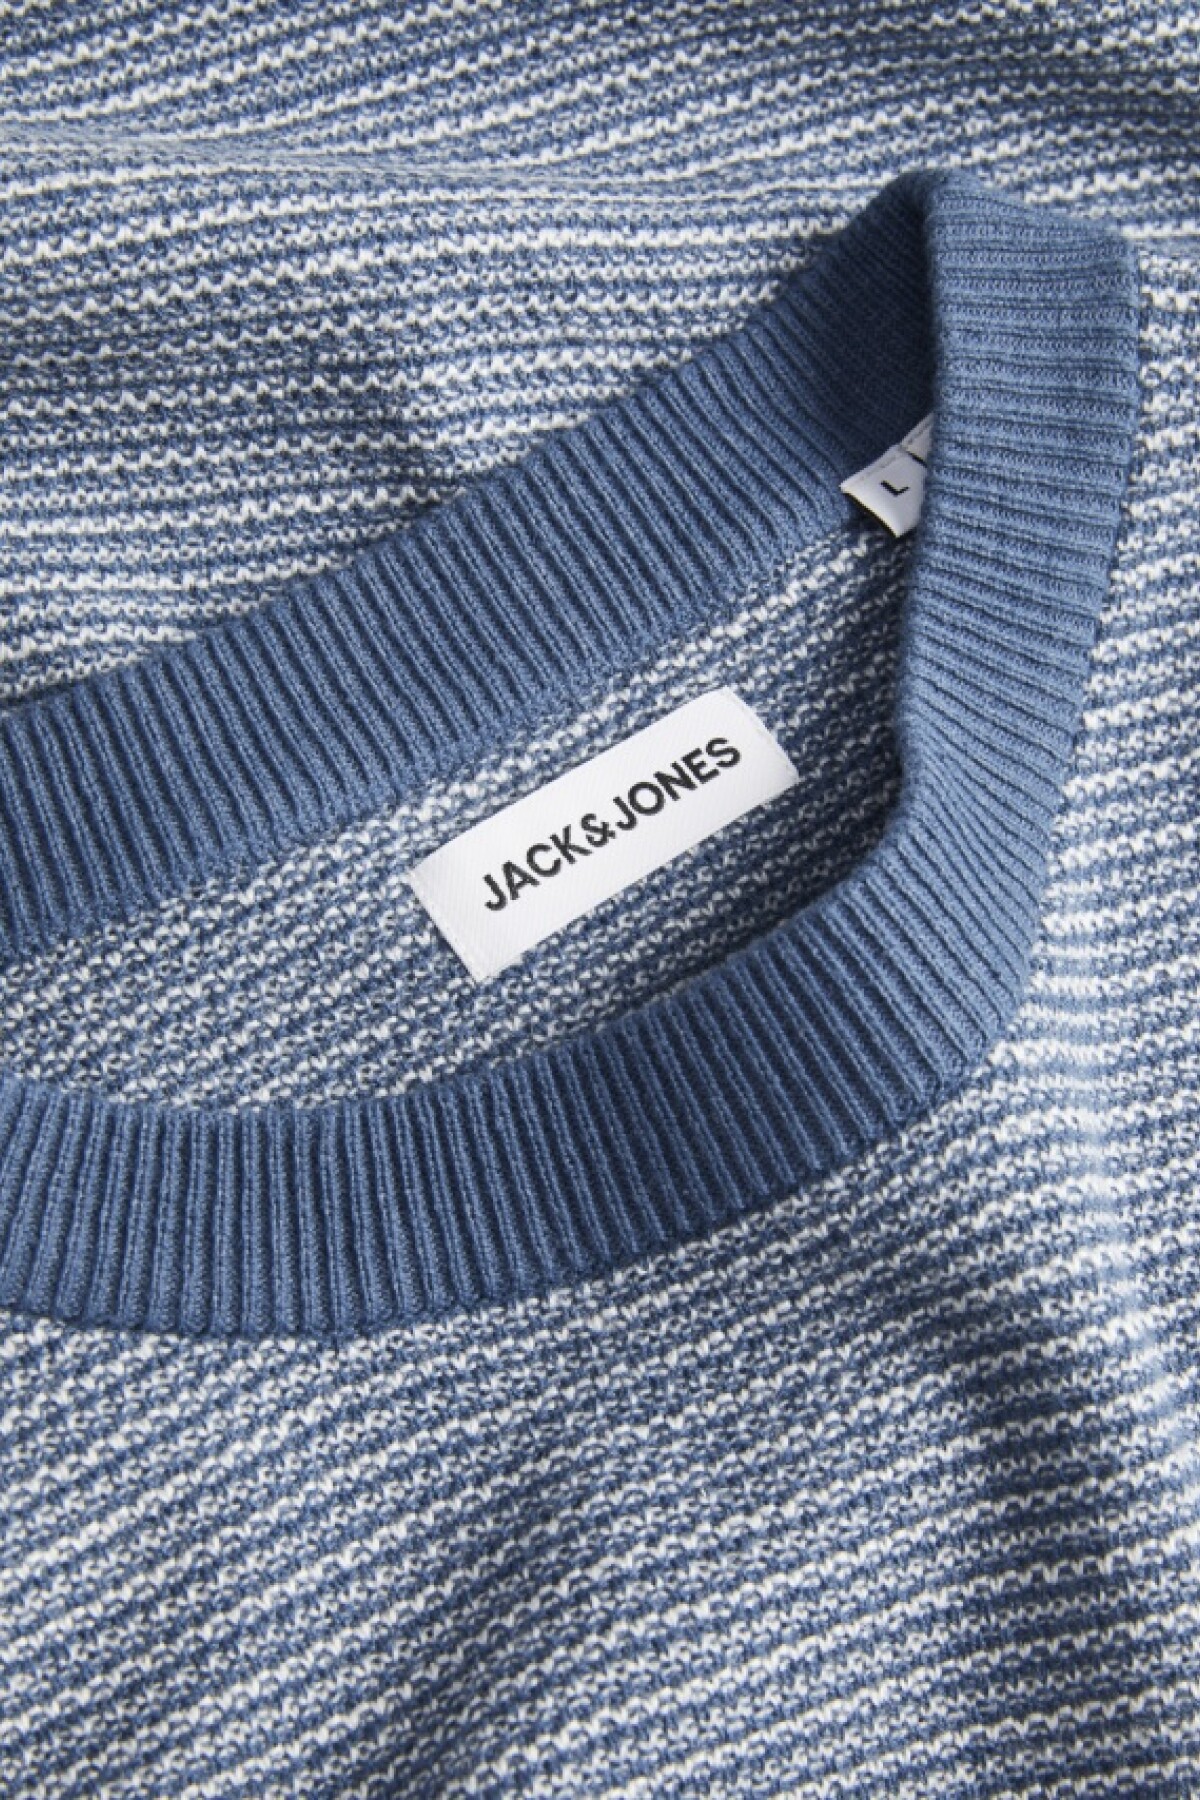 Sweater Jack Terminaciones En Contraste Ensign Blue